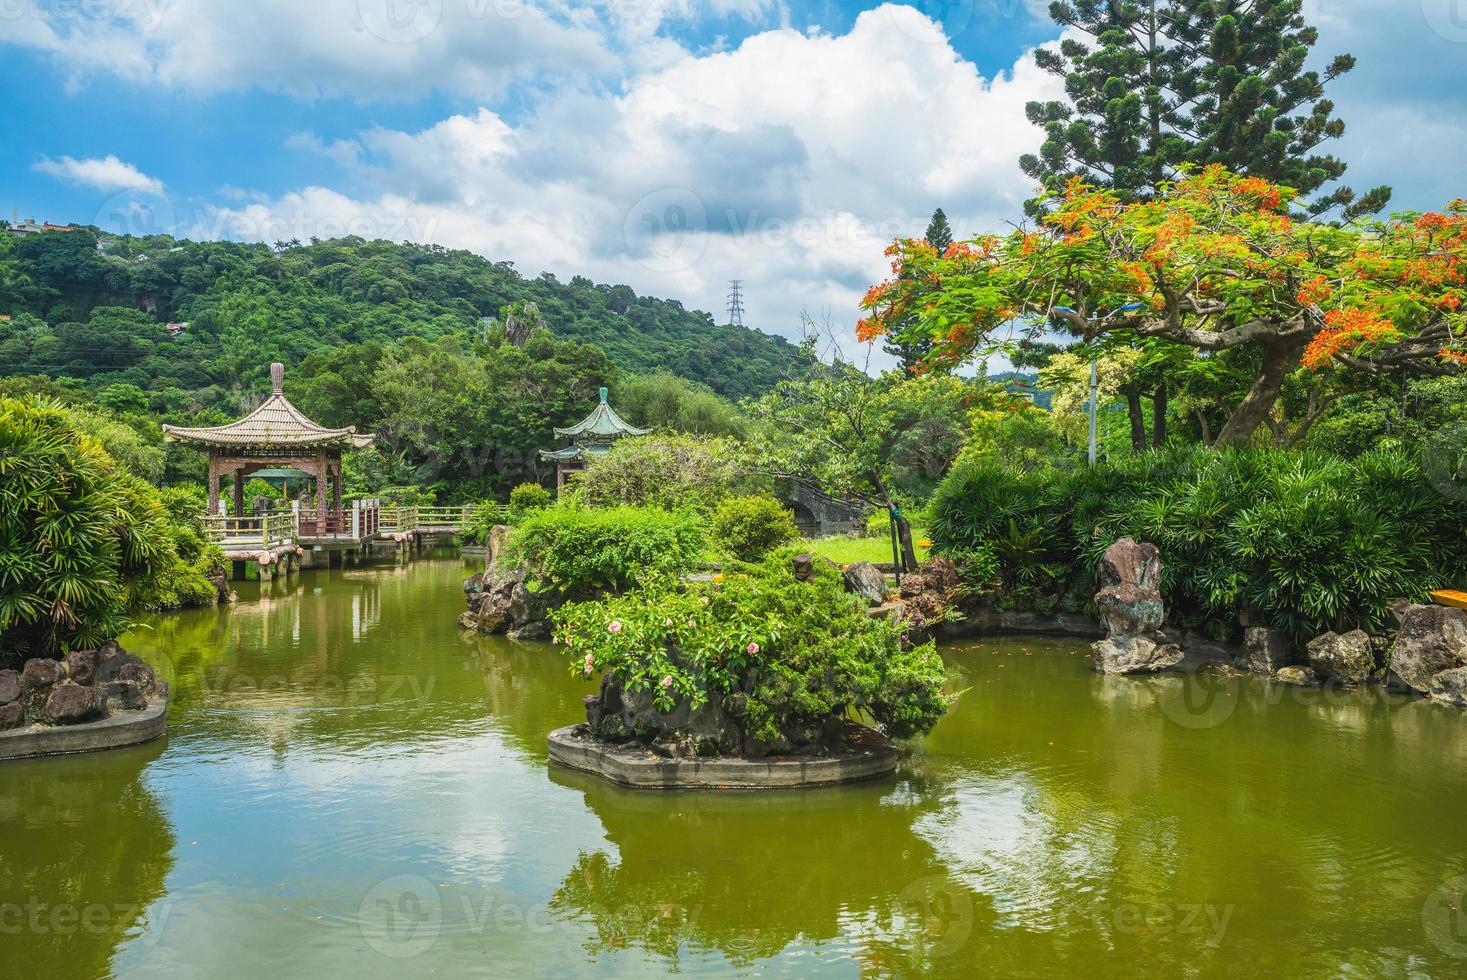 landskap av shuangxi parkerar och kinesisk trädgård i taipei, taiwan foto